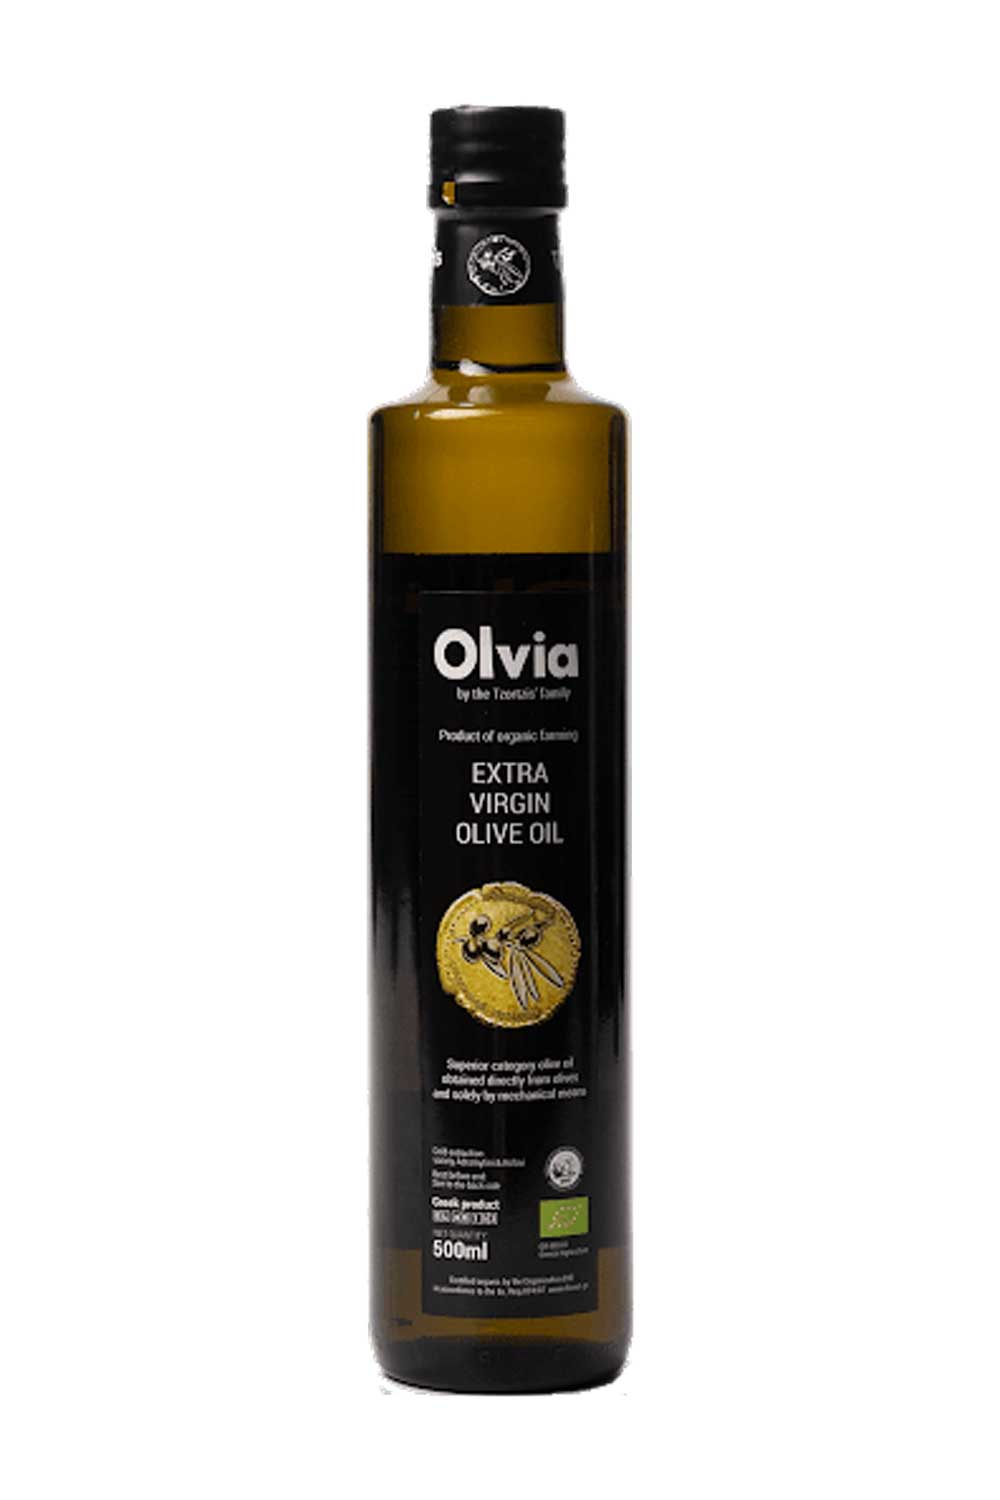 Olvia Extra Natives Olivenöl 0,75 lt. Bio